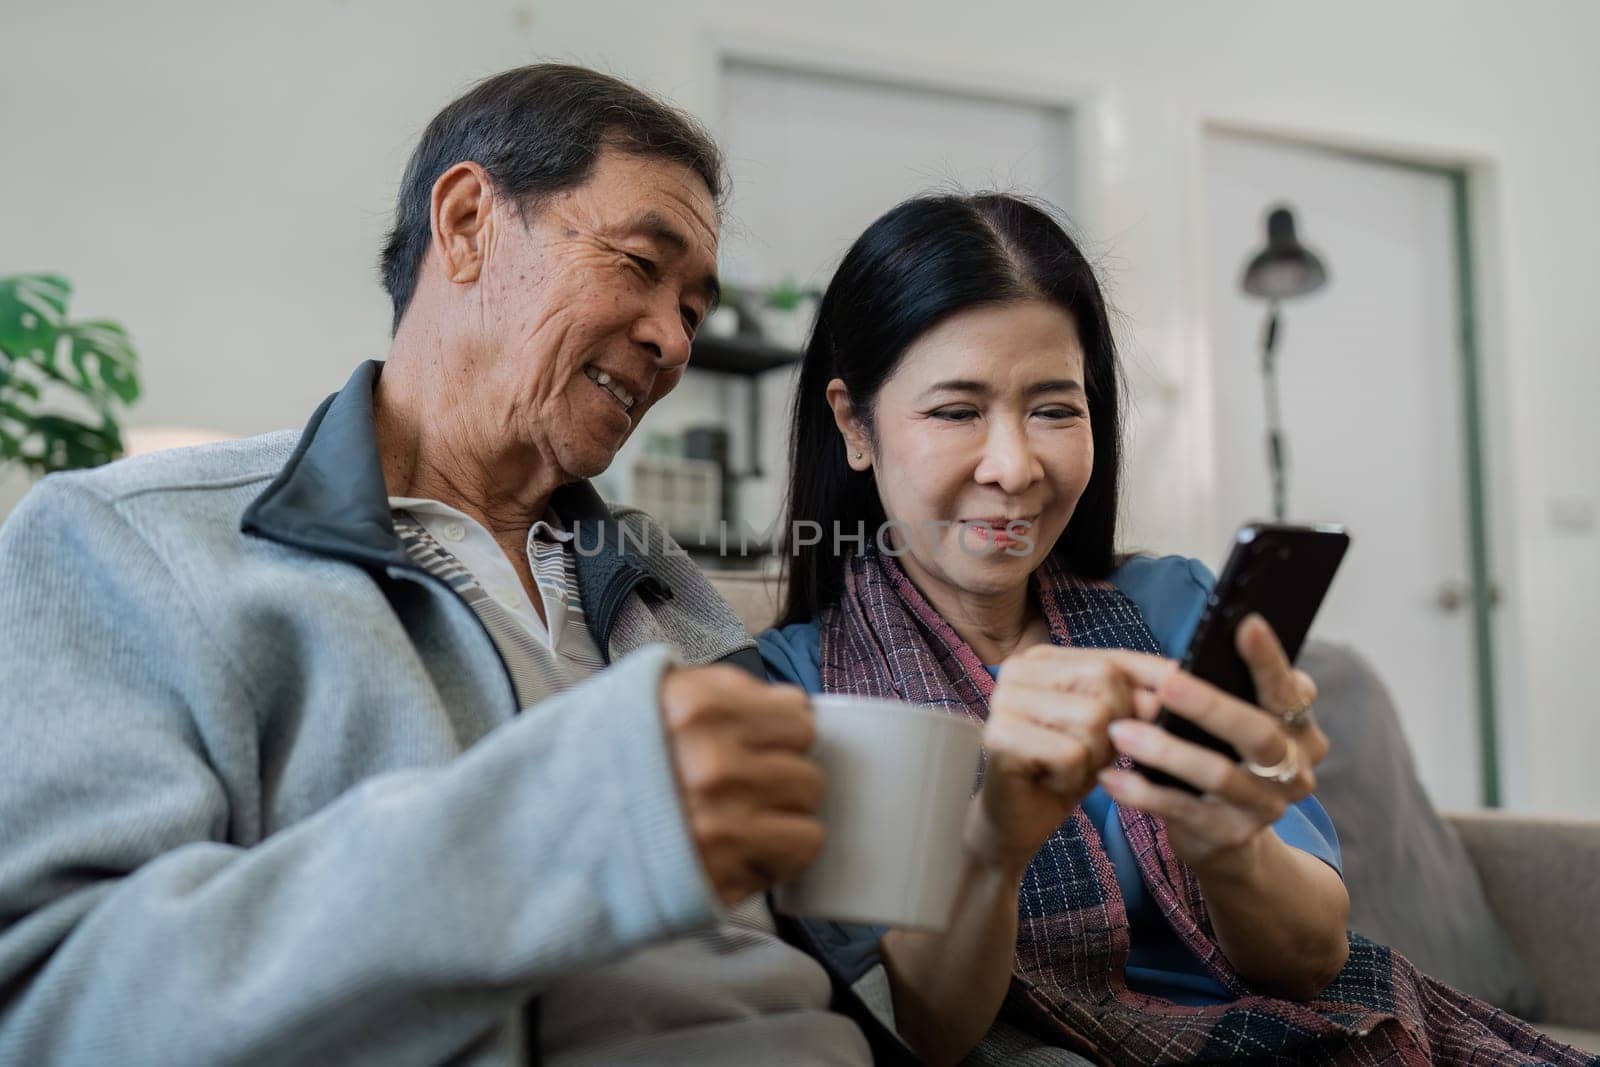 Smiling caucasian senior elderly couple grandparent using mobile together.